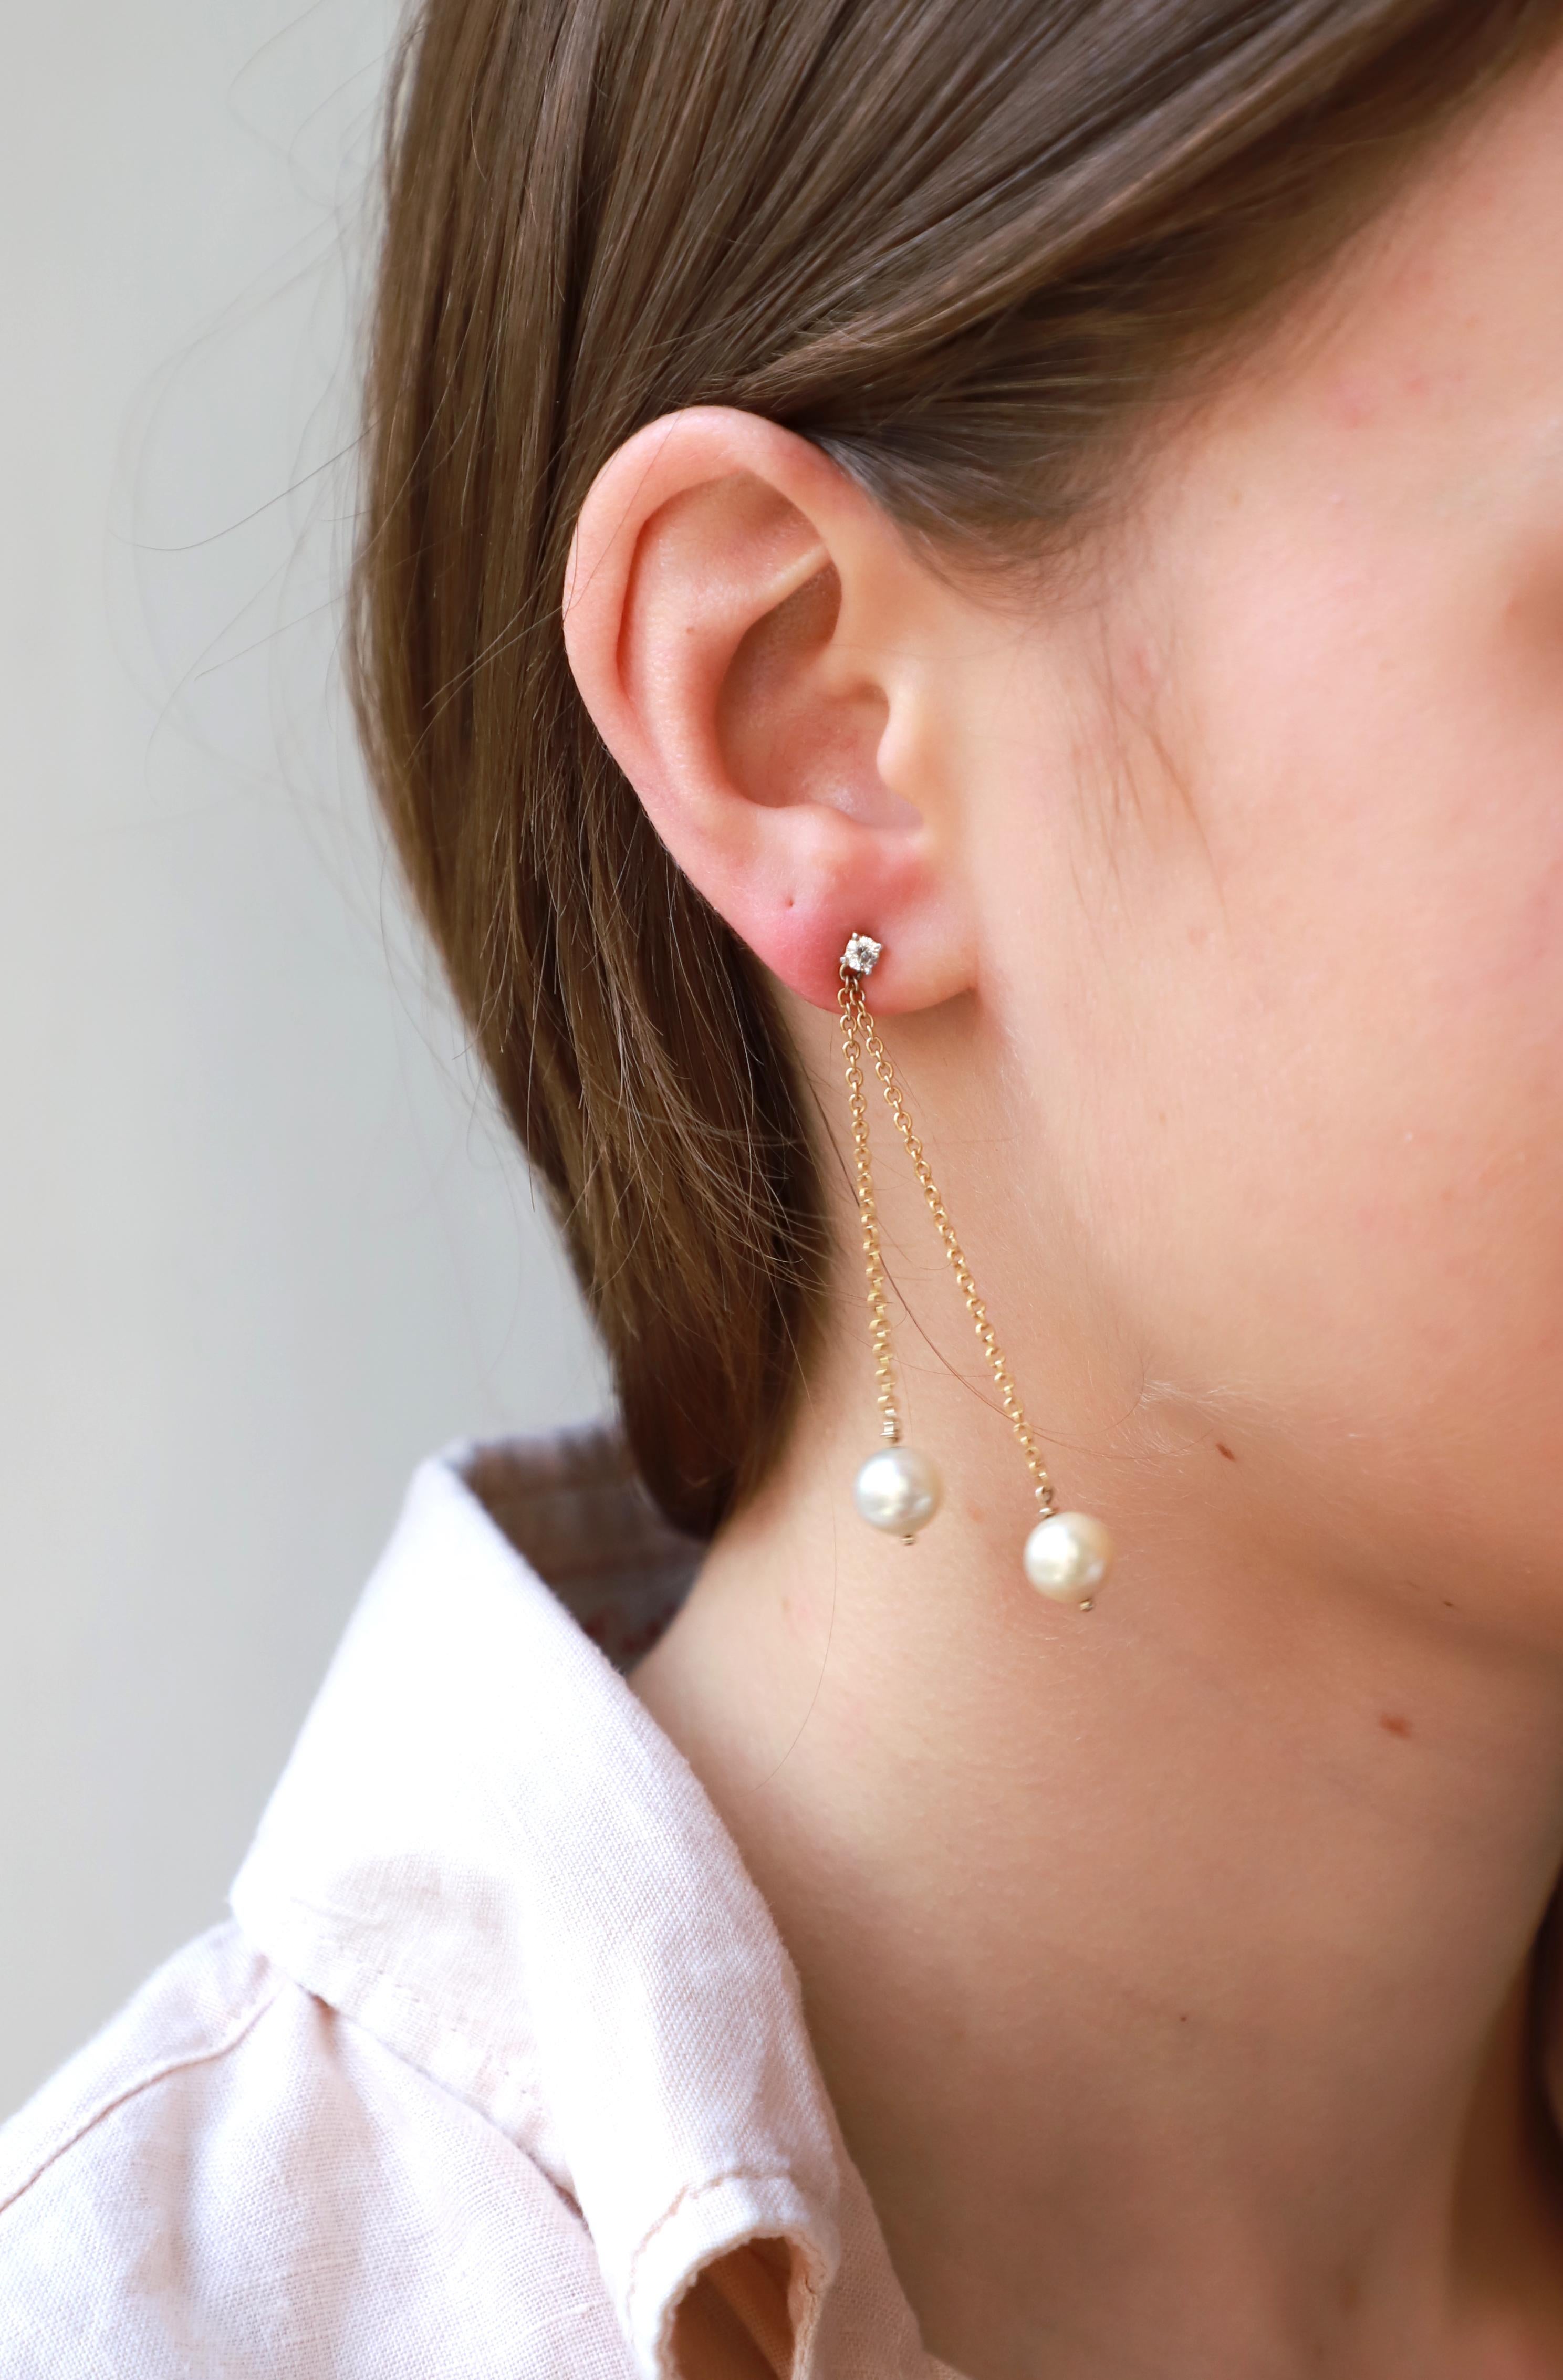 18Karat Gelbgold 0,16Karat Weißer Diamant Ohrringe mit modernem Design
Diese wunderschönen Ohrringe sind mit einem Kettchen aus 18 Karat Gelbgold und 0,16 Karat weißen Diamanten gefertigt und mit zwei runden Perlen verziert.  
Perlen sollen Schutz